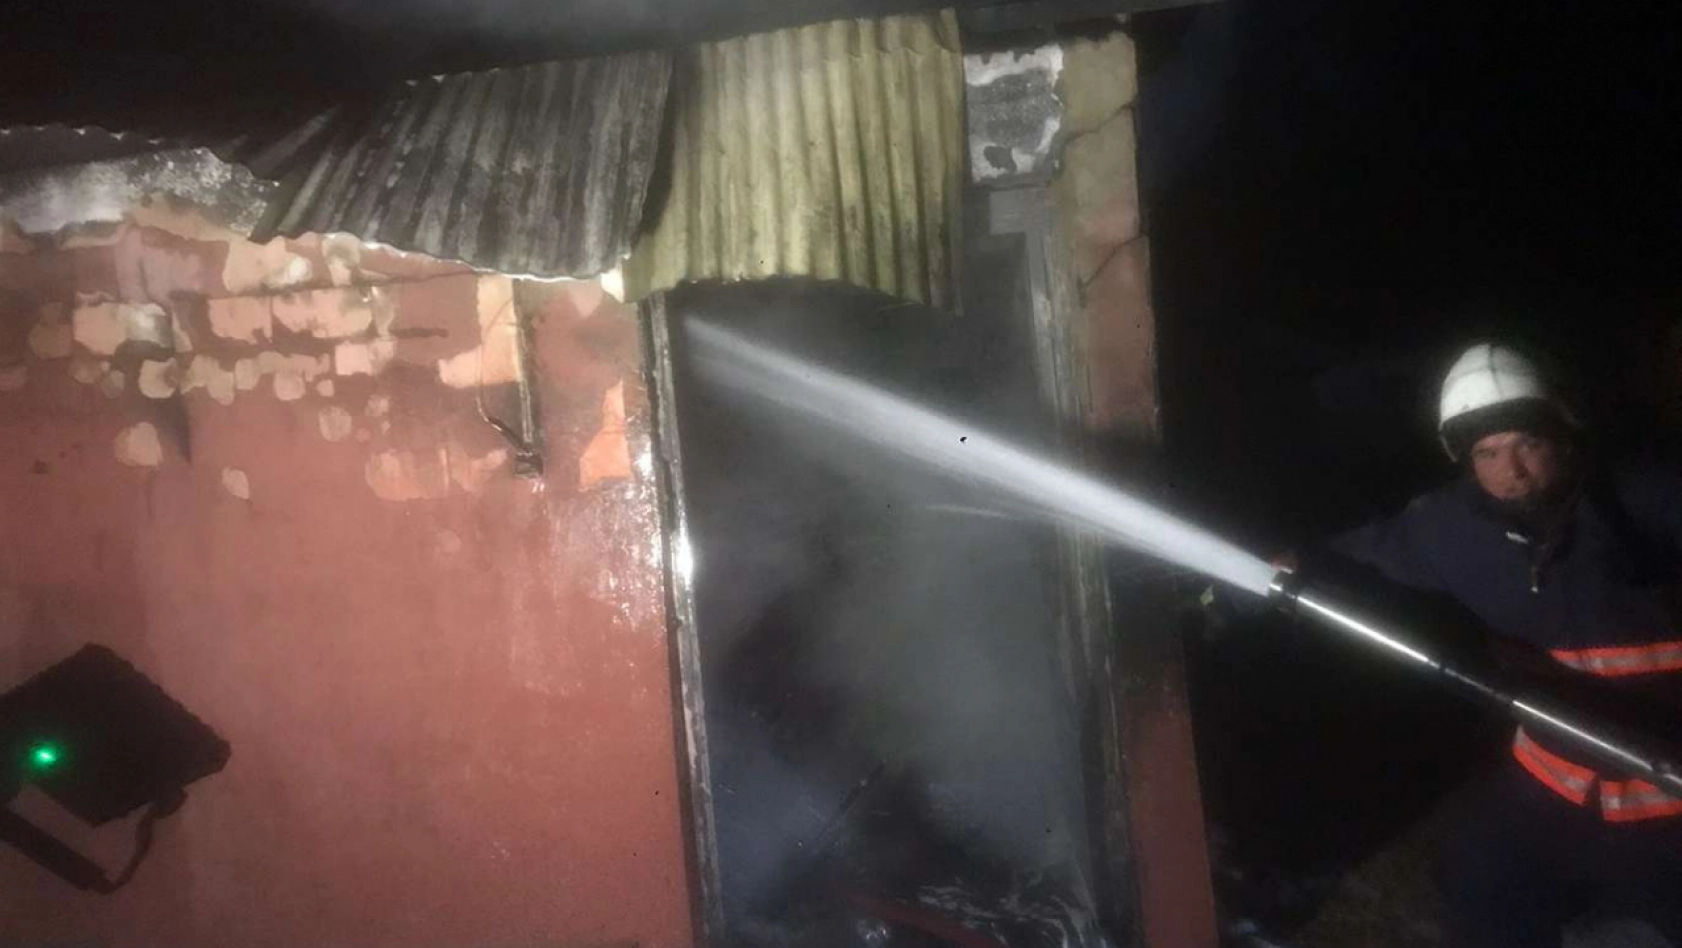 Malatya'da maden ocağı yakıt tankında yangın çıktı